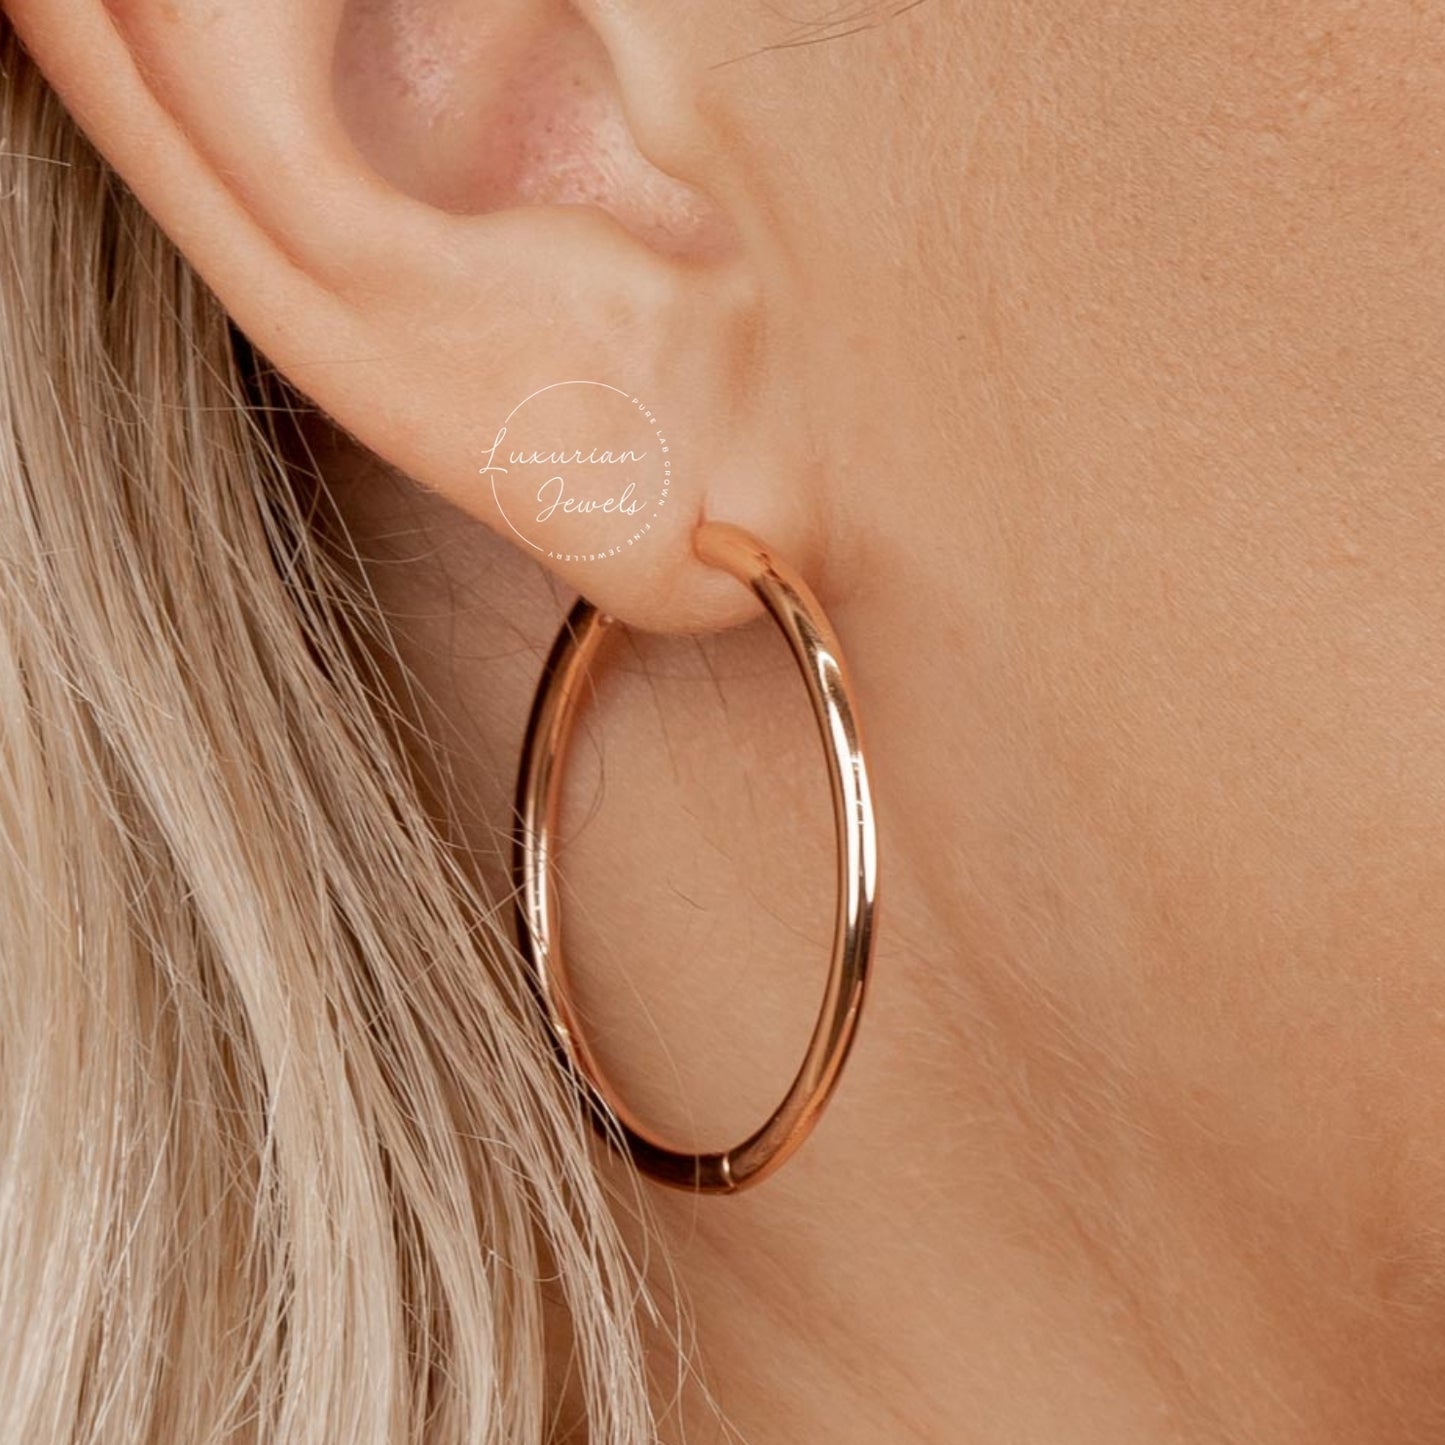 14k Solid Gold Dainty Round Hoop Earrings